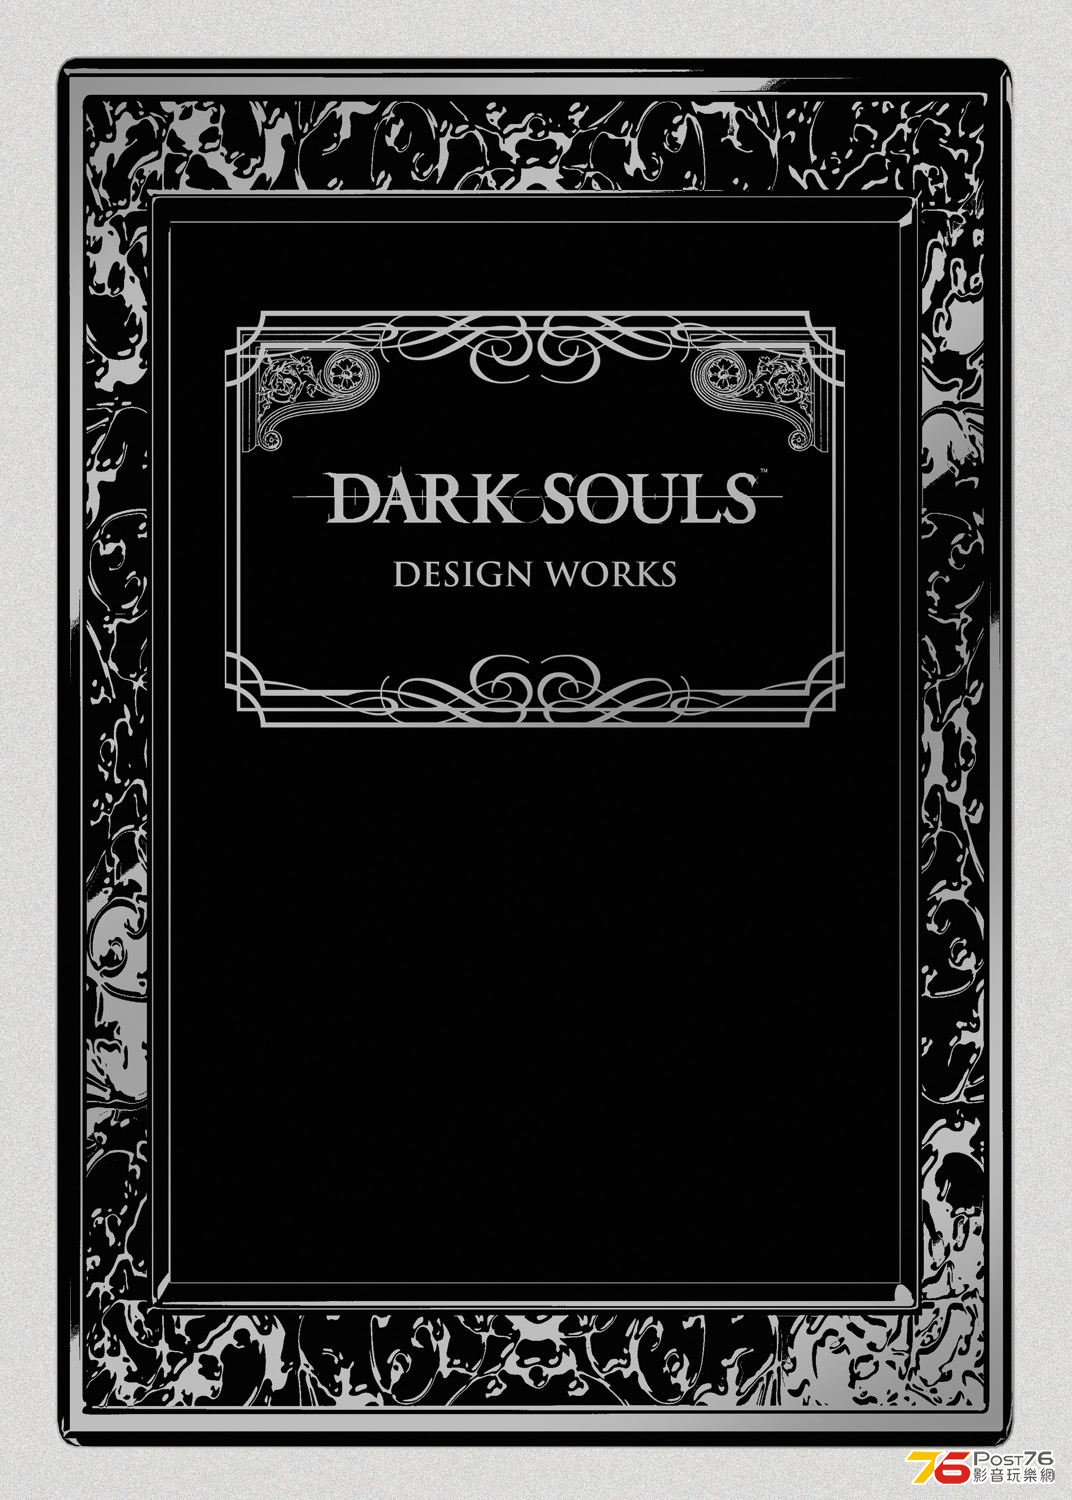 DarkSouls_cover.jpg